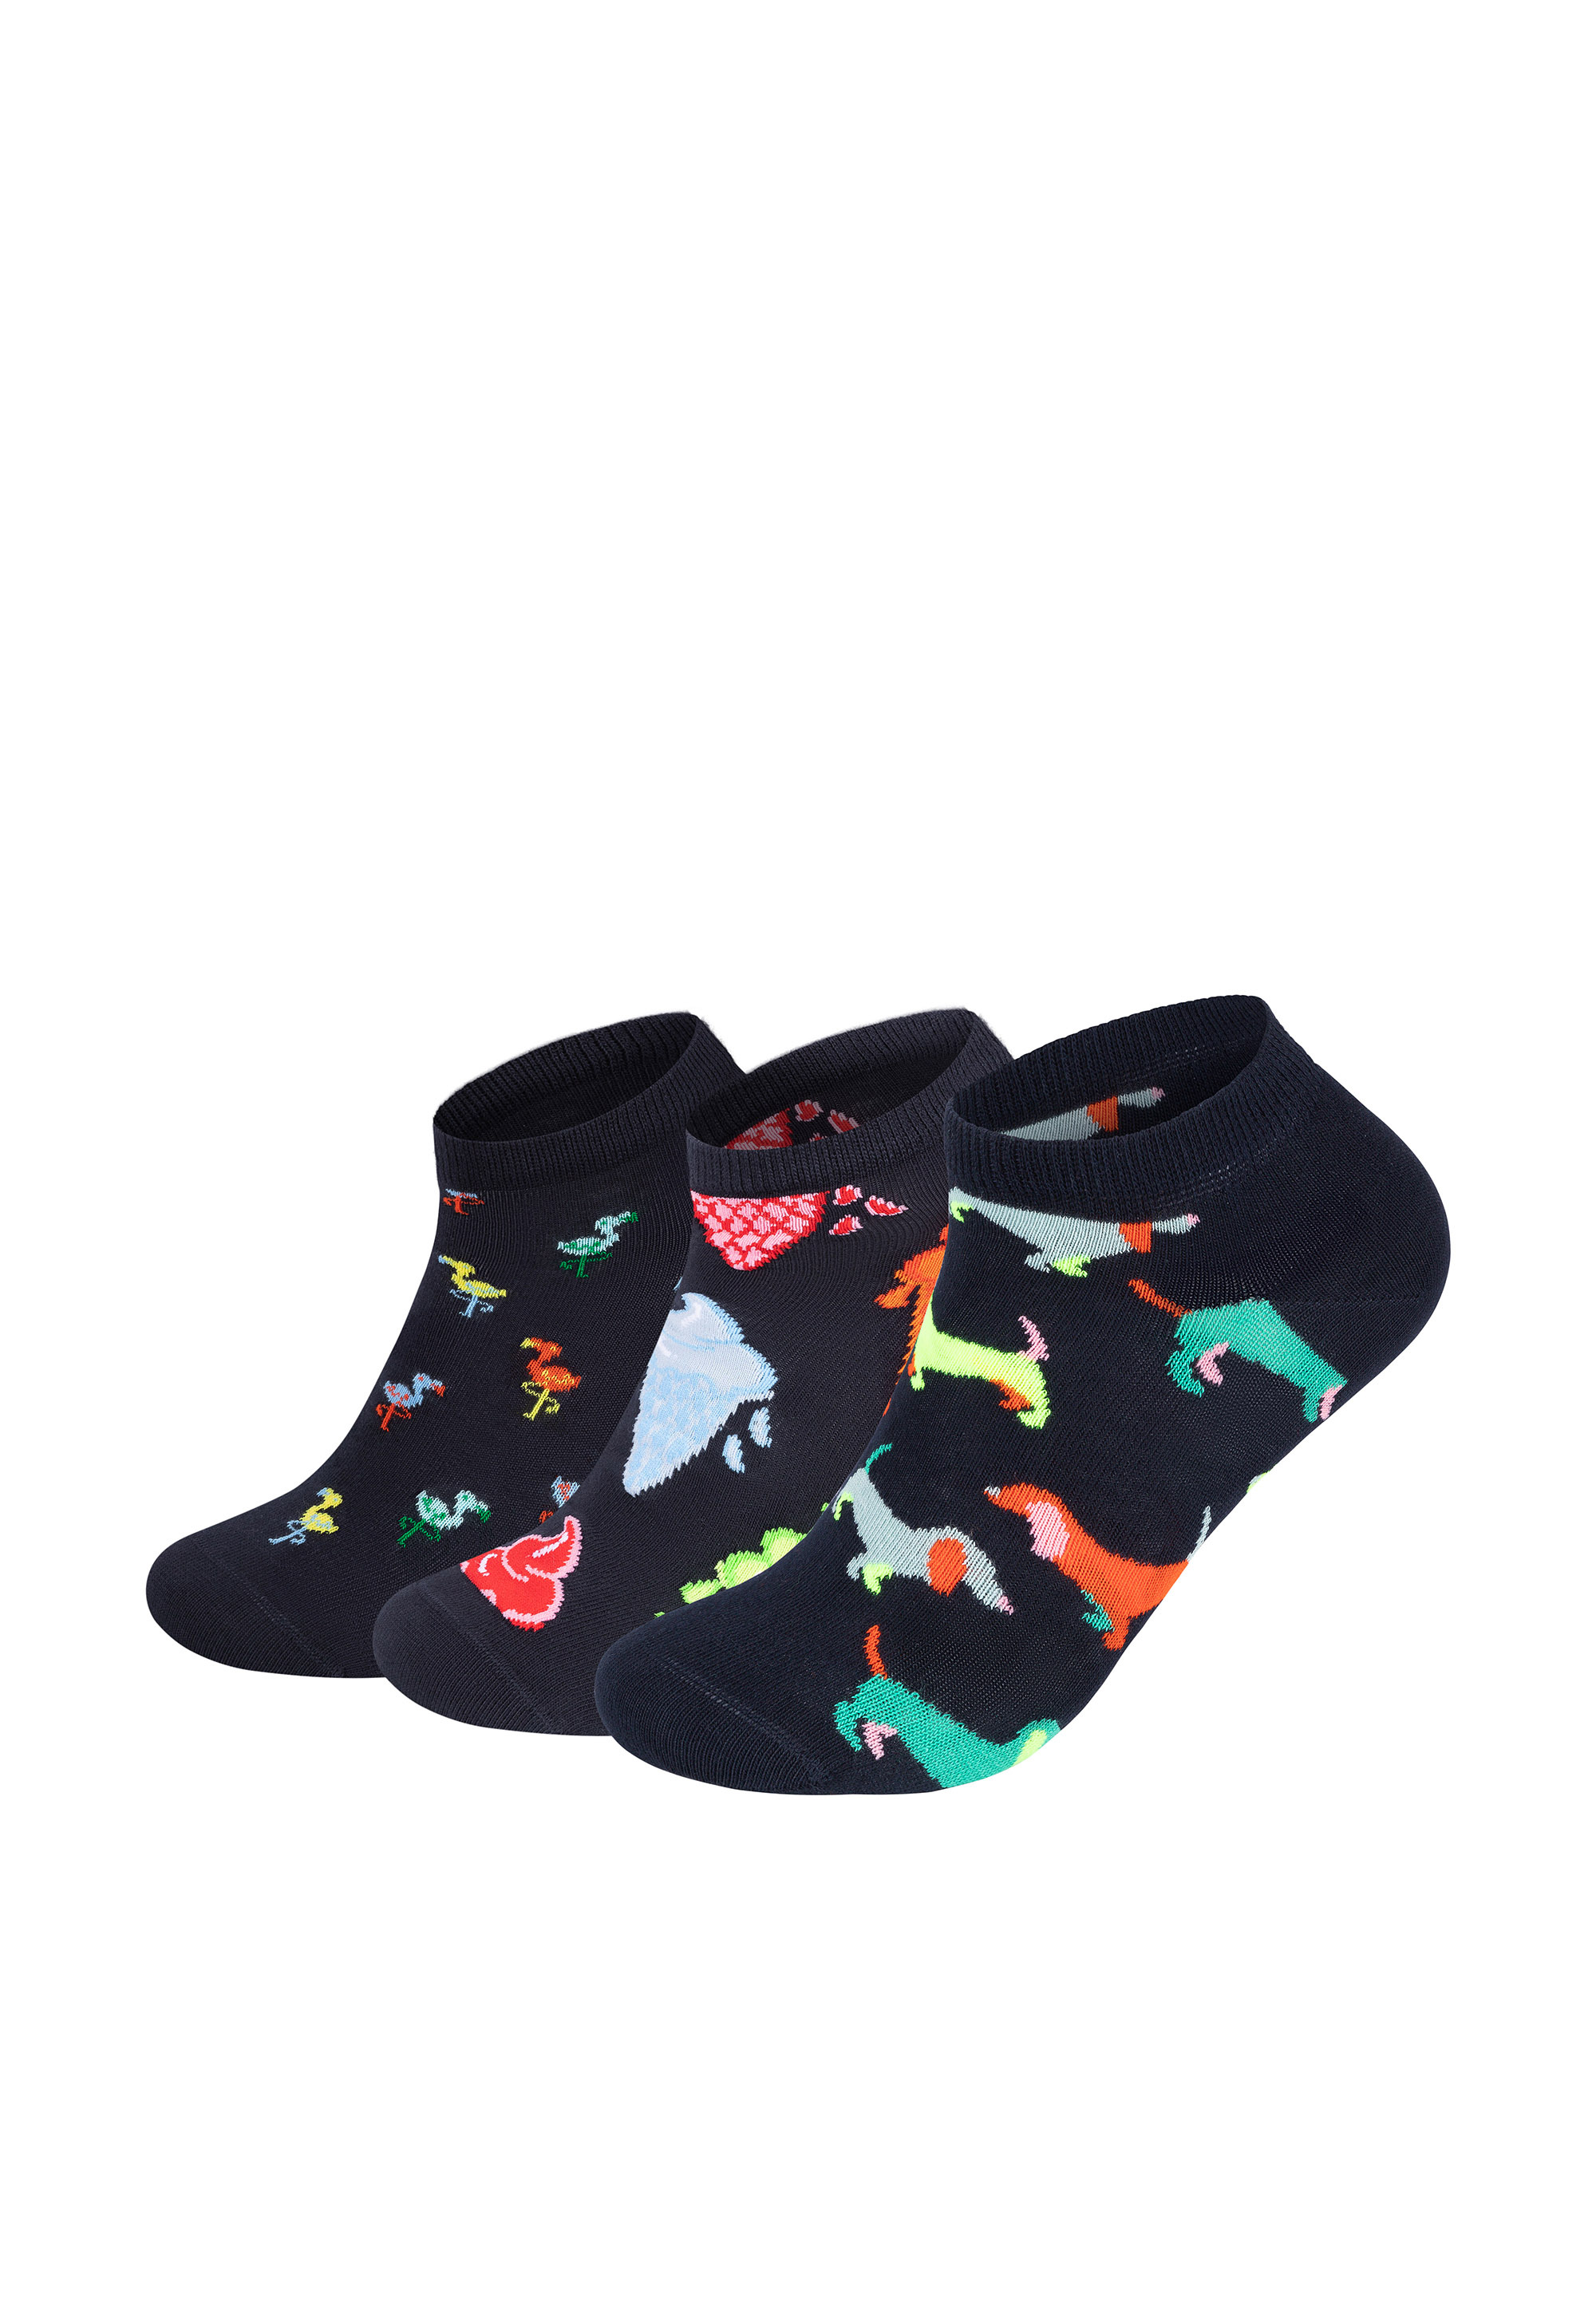 Носки Happy Socks 3 Pack Low Ice Cream Flamingo Puppy Love Socks, цвет multi_coloured носки happy socks носки ice cream